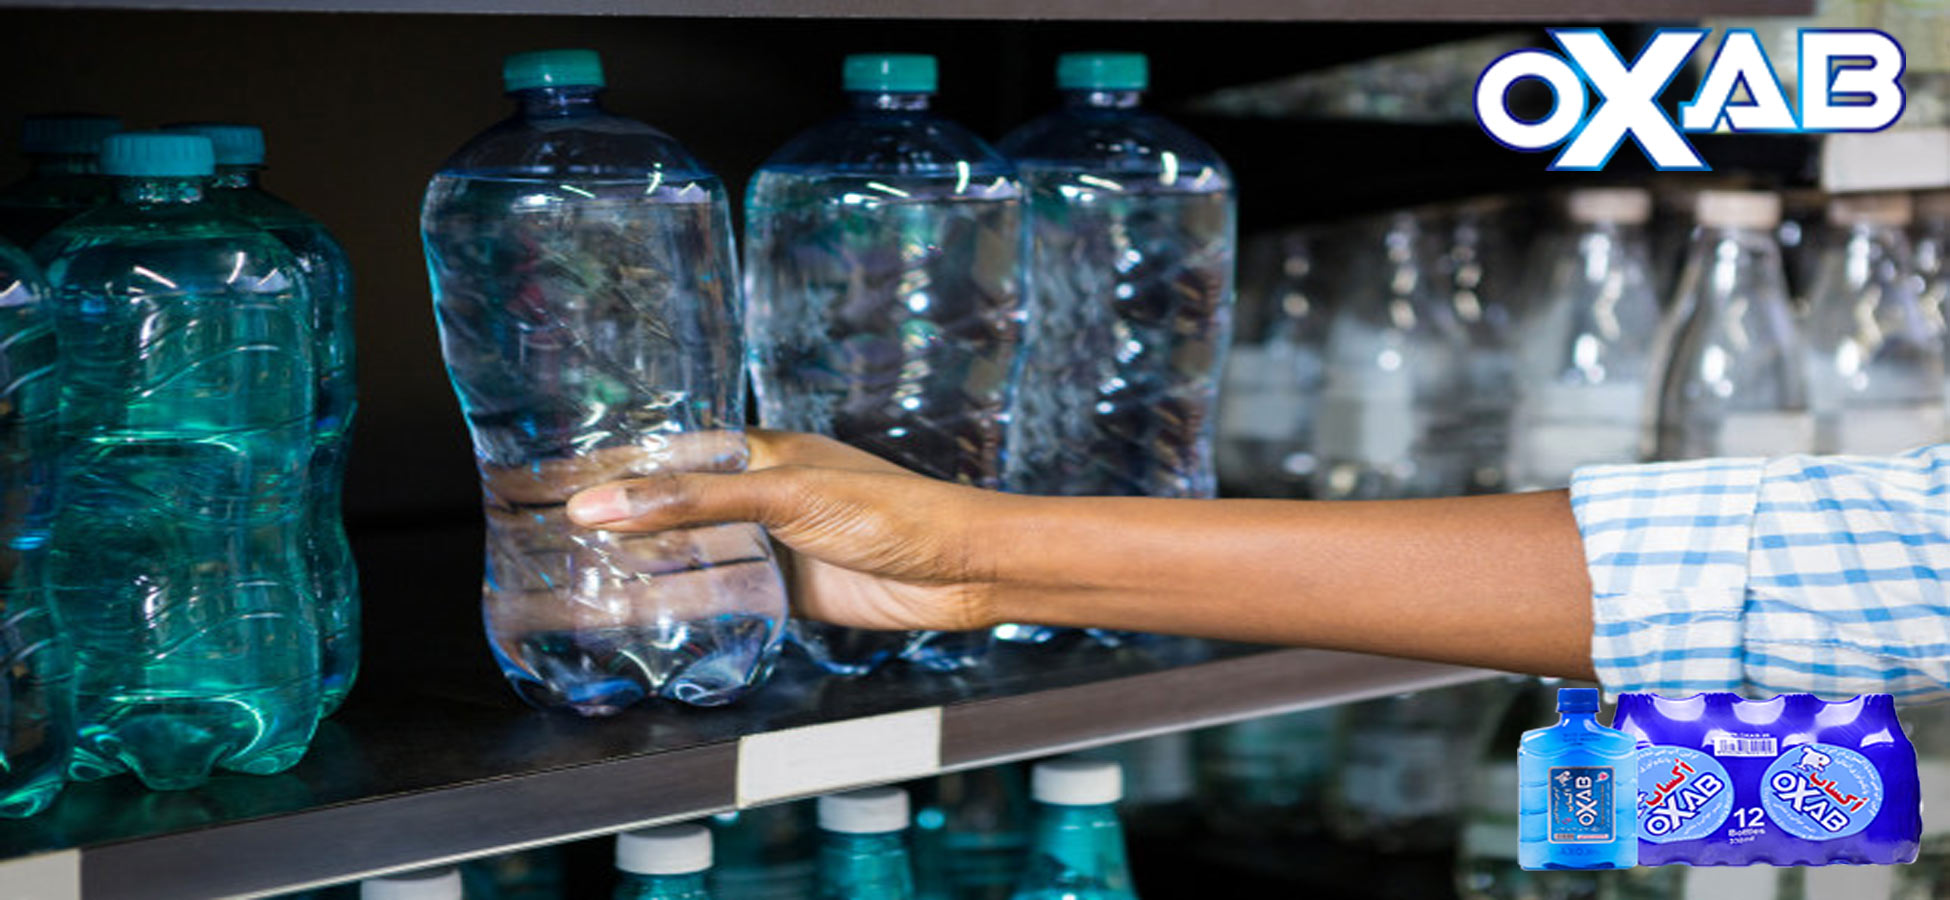 مضرات سختی آب آشامیدنی برای بدن خرید آب